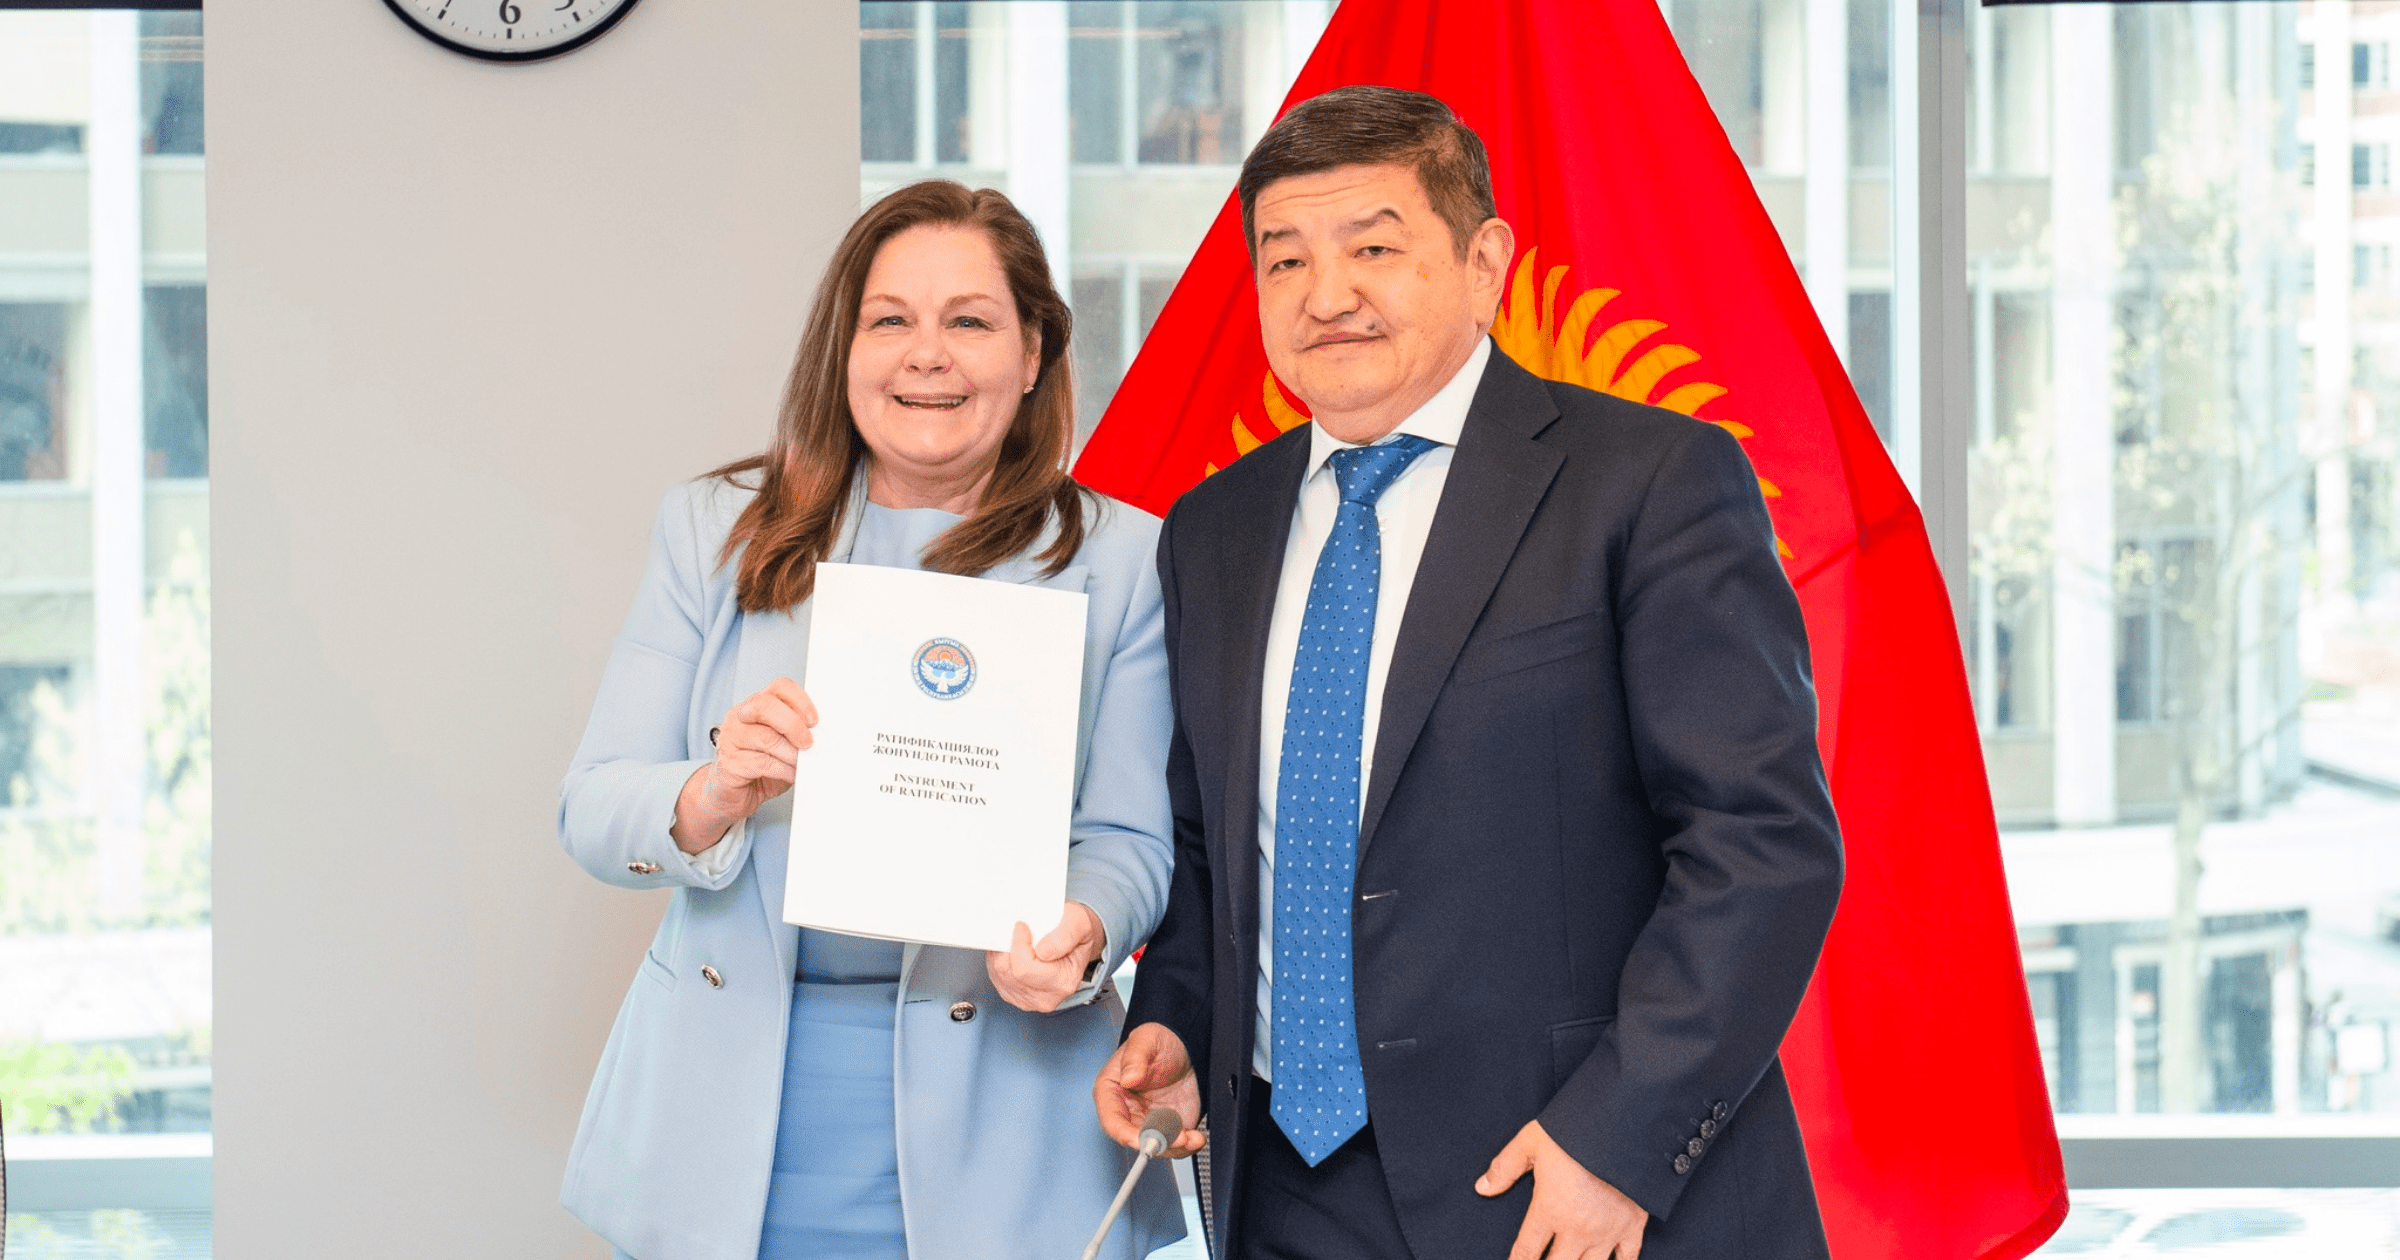 Кыргызстан ратифицировал конвенцию МЦУИС – Жапаров передал ее на хранение во Всемирный банк